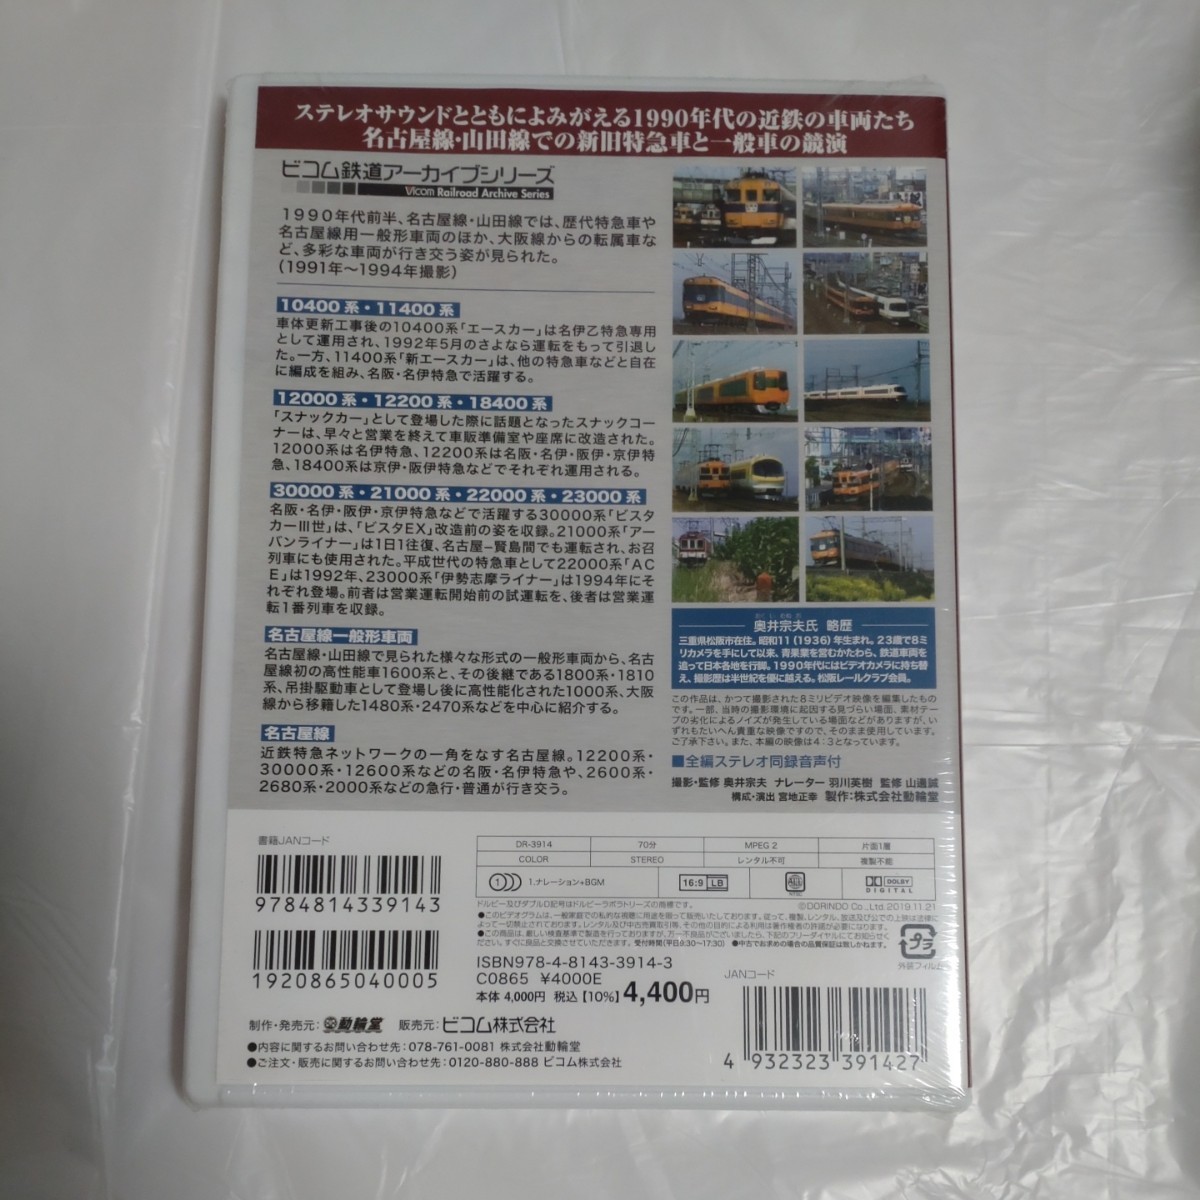 よみがえる20世紀の列車たち14 私鉄VI 近鉄篇2 奥井宗夫8ミリビデオ作品集 DVD_画像2